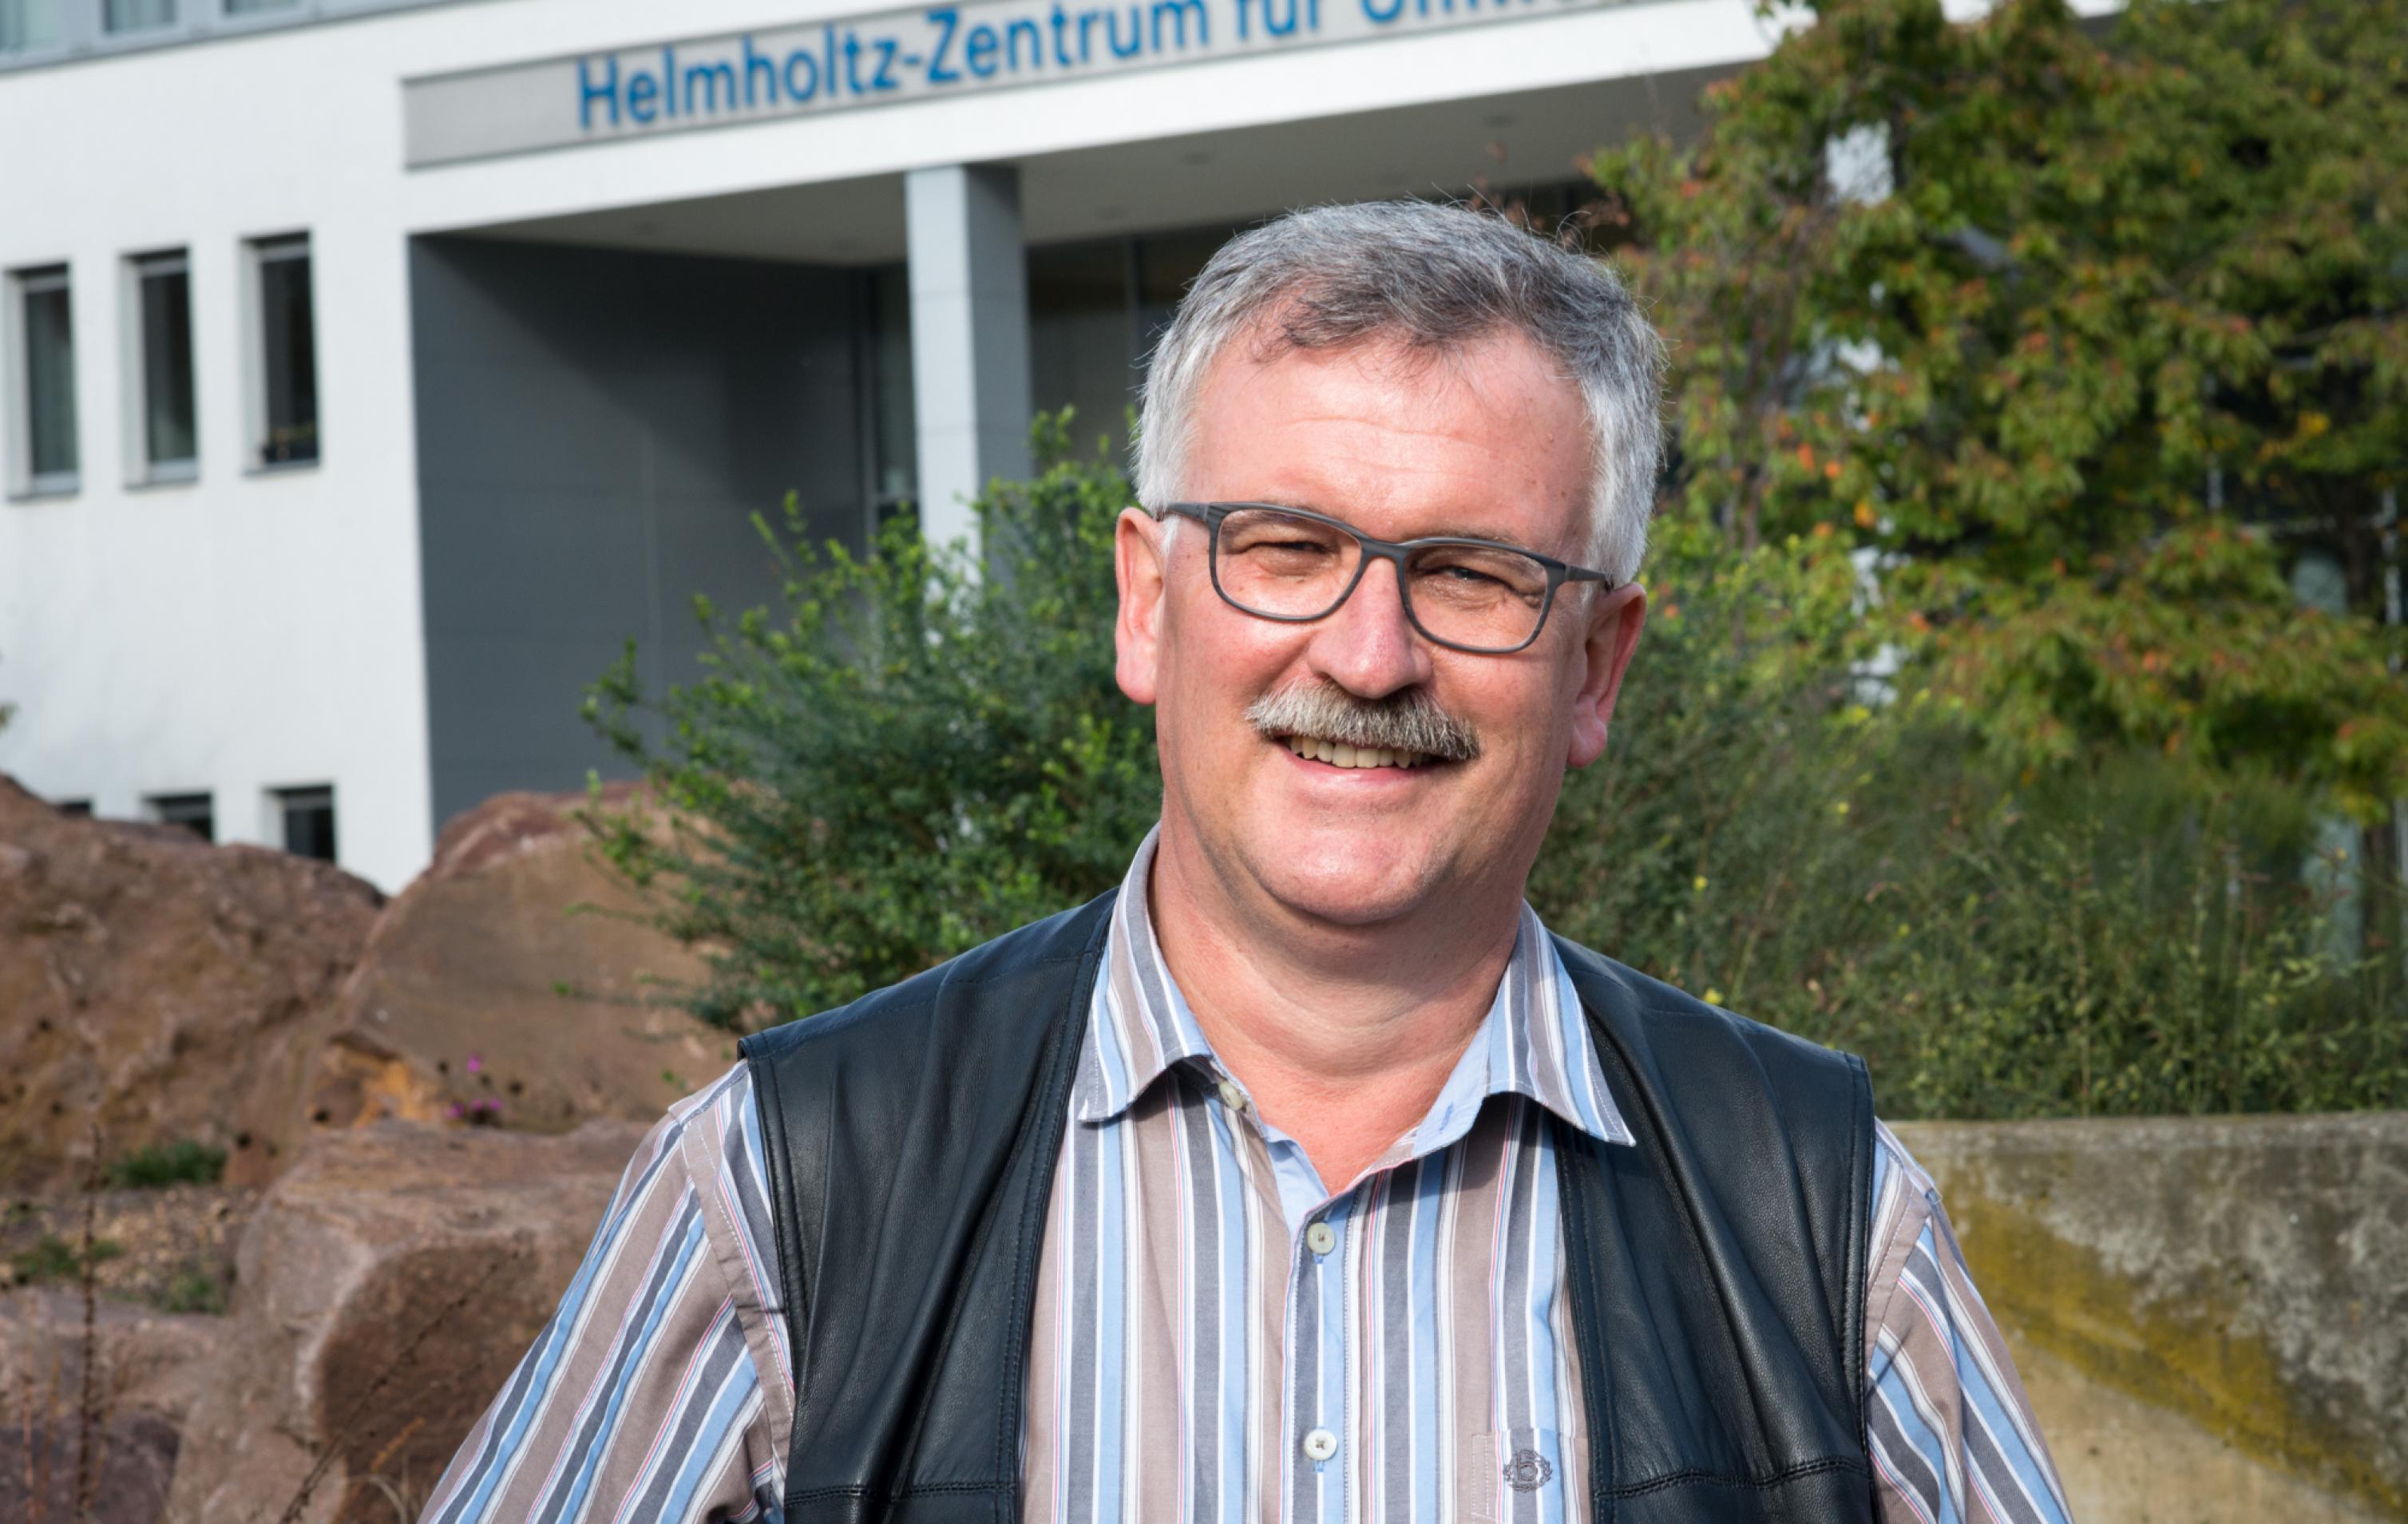 Josef Settele vor dem Helmholtz-Zentrum für Umweltforschung in Halle